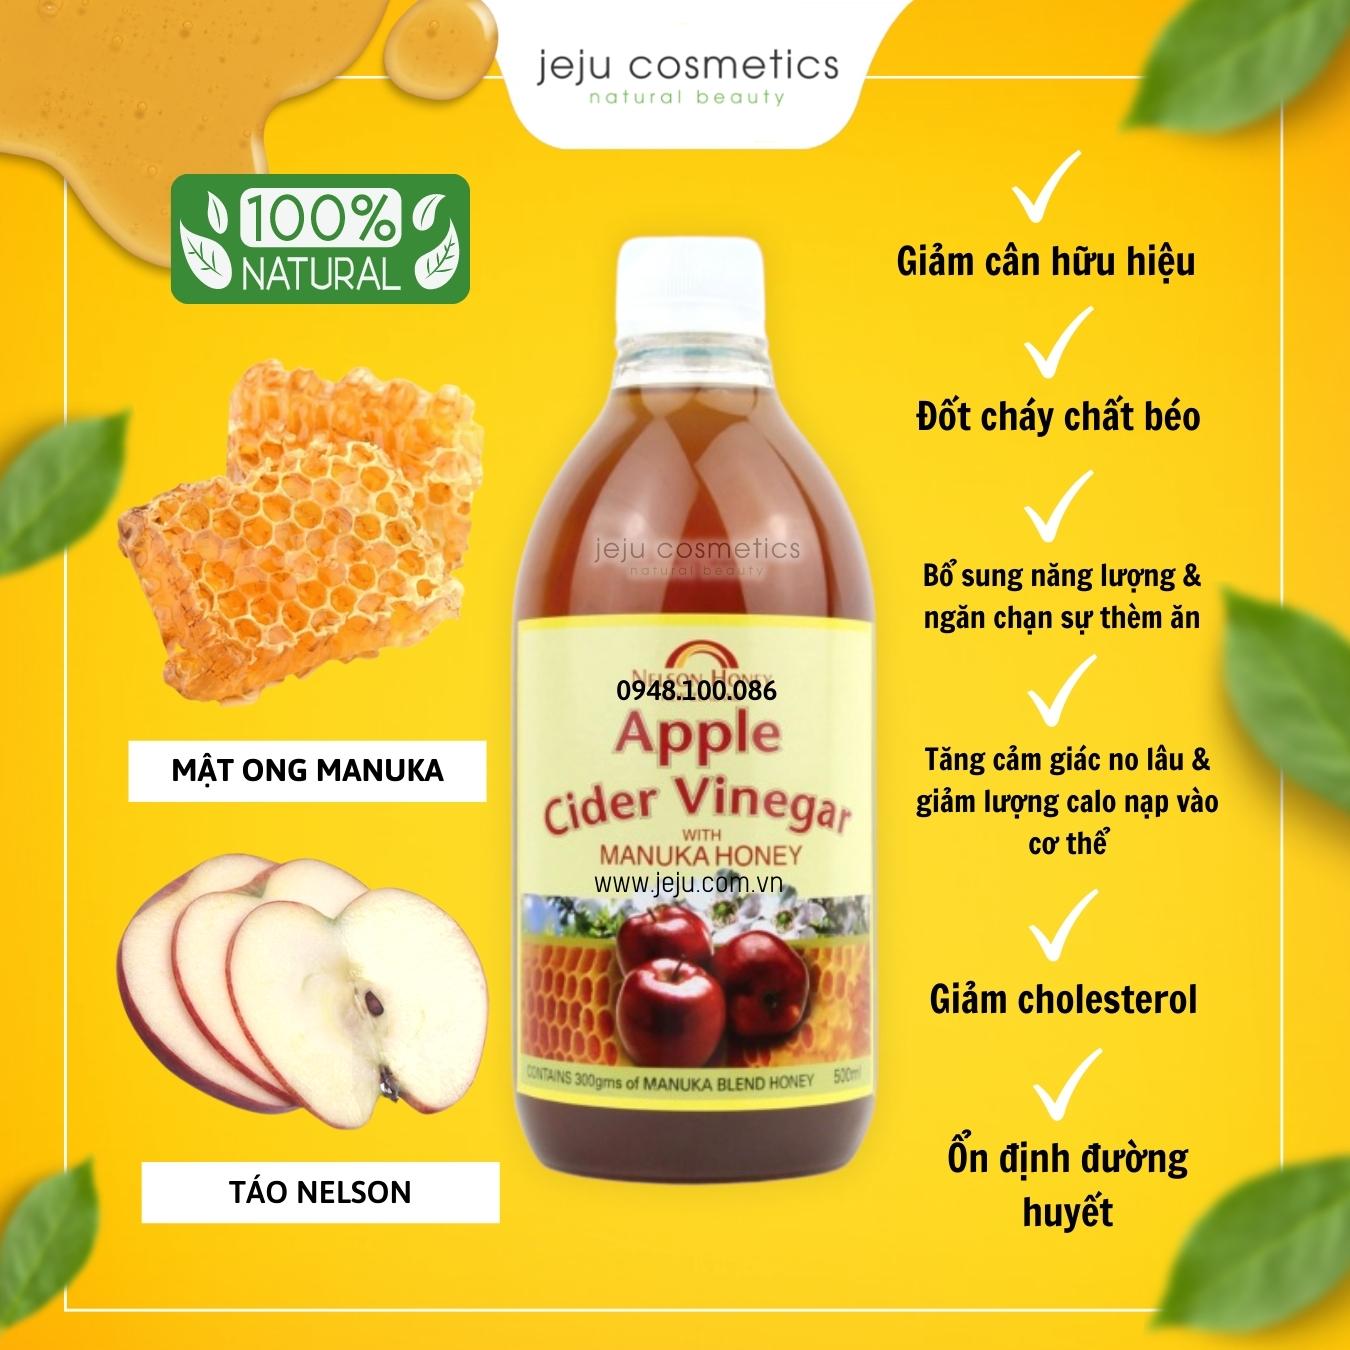 Nước Giấm táo với mật ong Manuka Nelson Táo Cider Vinegar with Manuka Honey Blend